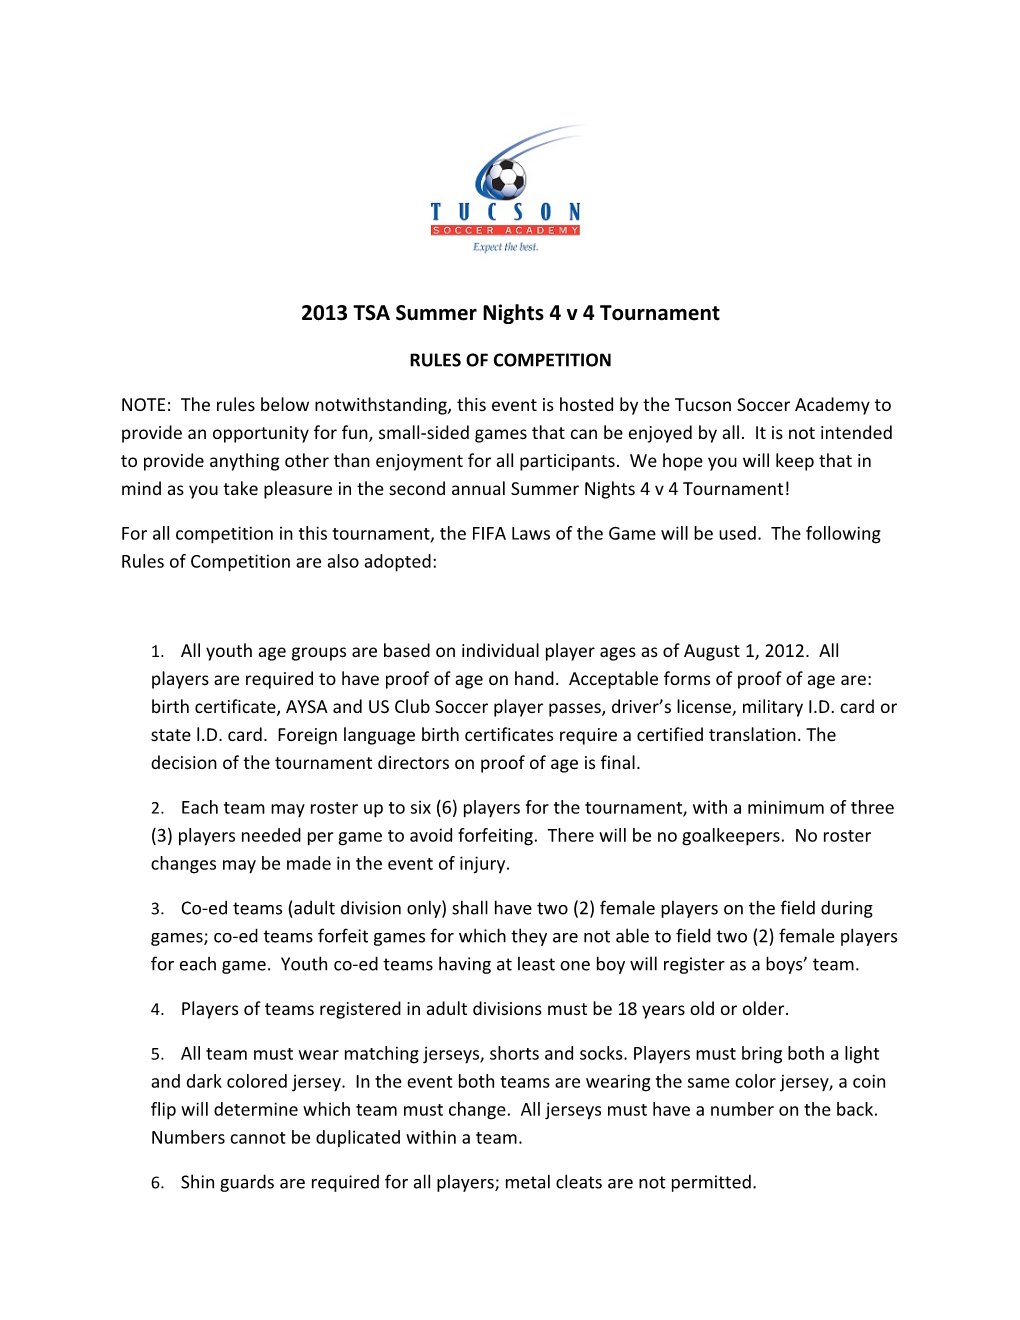 2013 TSA Summer Nights 4 V 4 Tournament